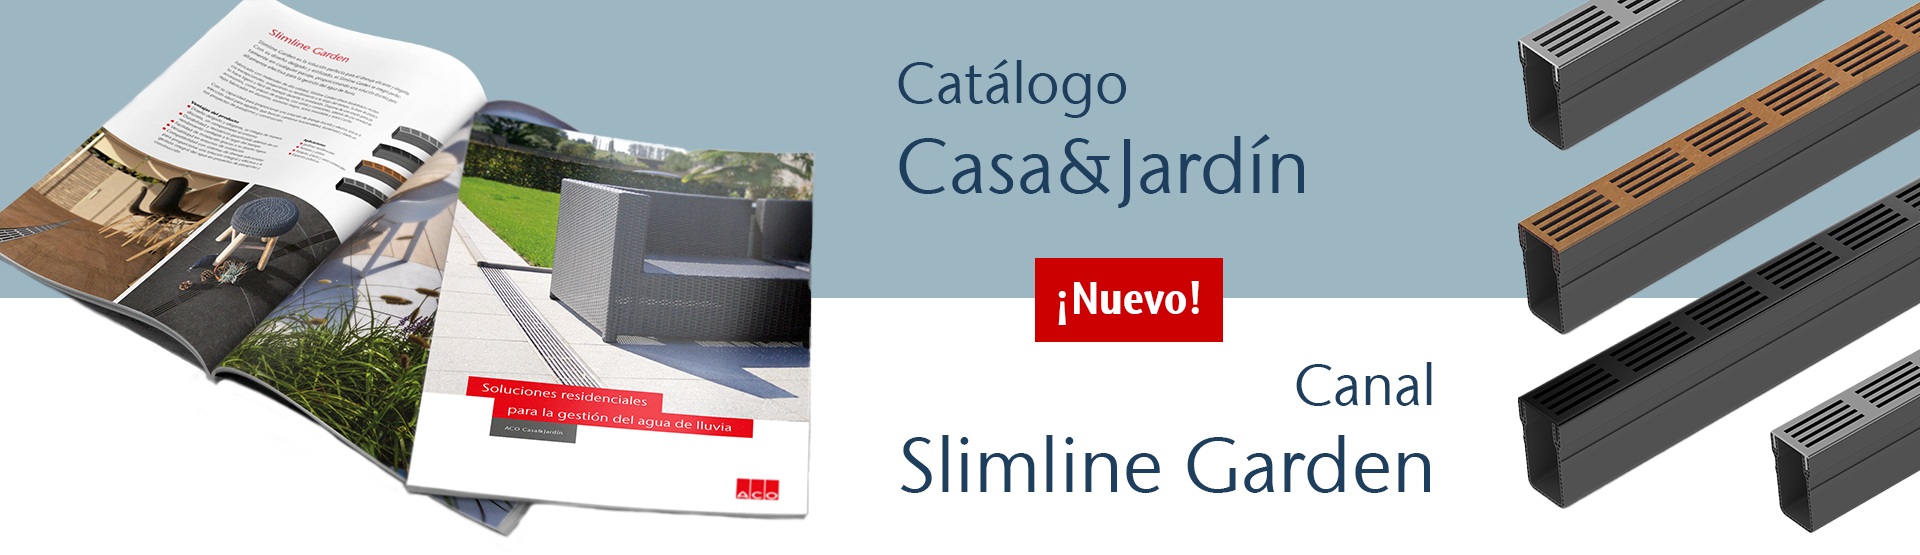 ACO - Catálogo Casa&Jardín y canal Slimline Garden